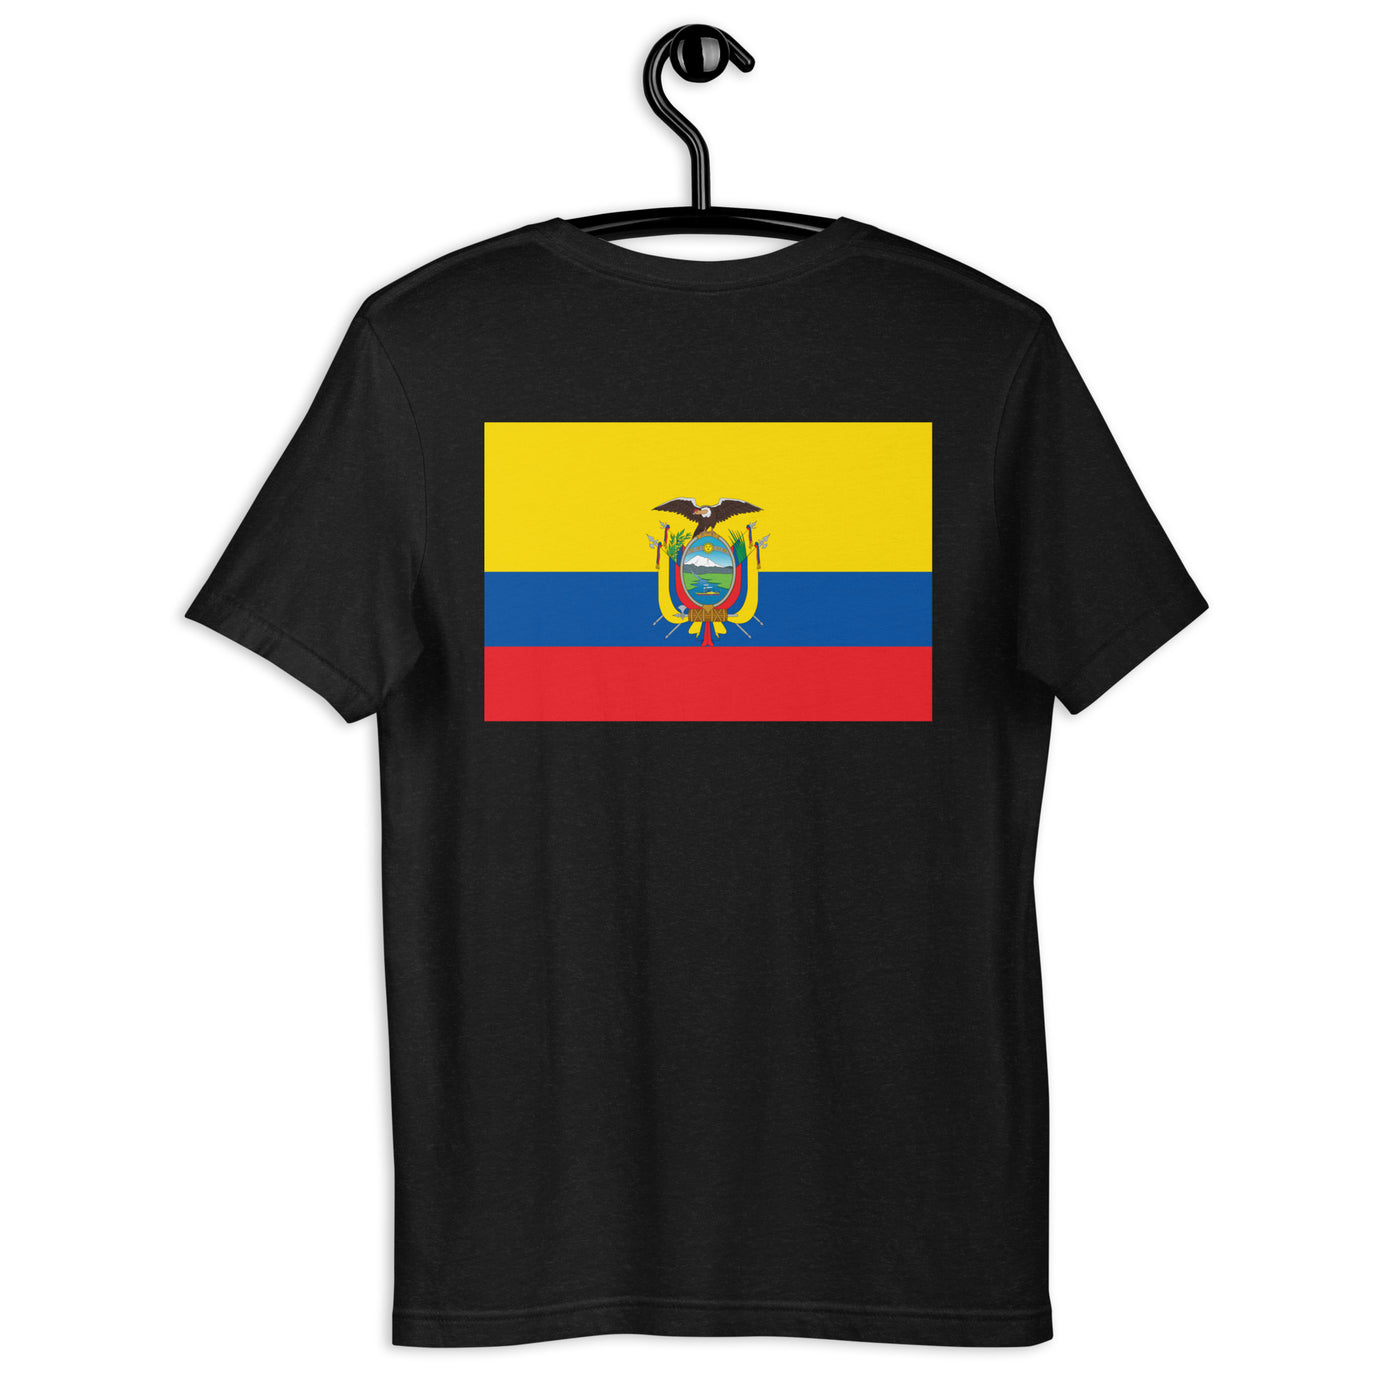 Ecuador PORVIDA Futbol Unisex t-shirt